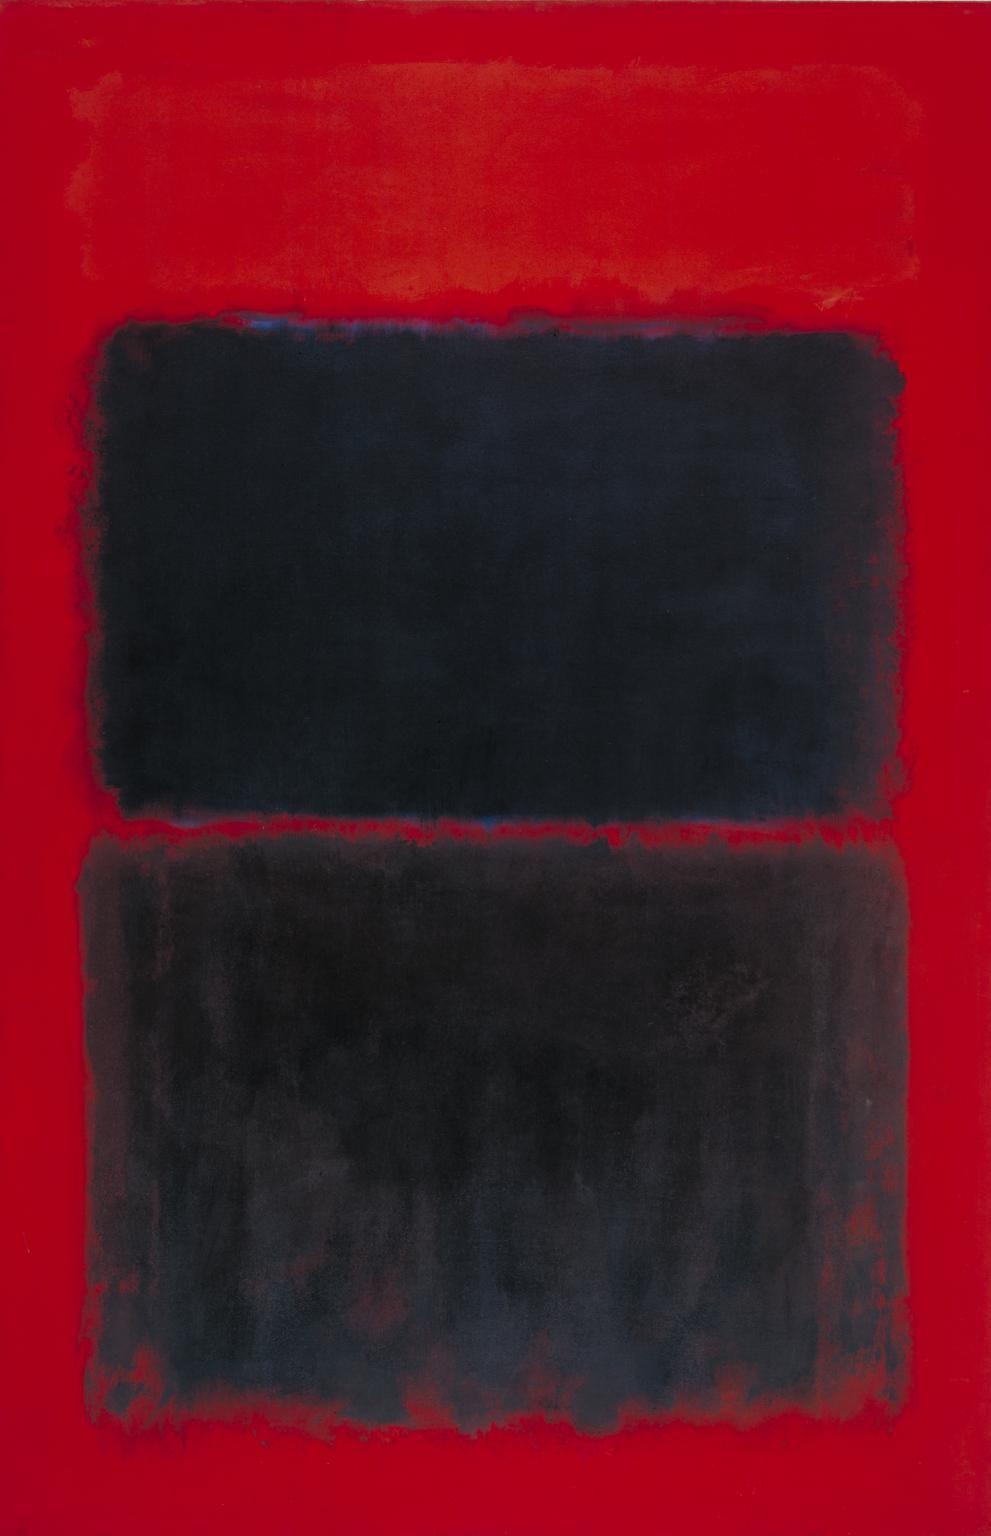 Black and Red Rectangle Logo - Light Red Over Black', Mark Rothko, 1957